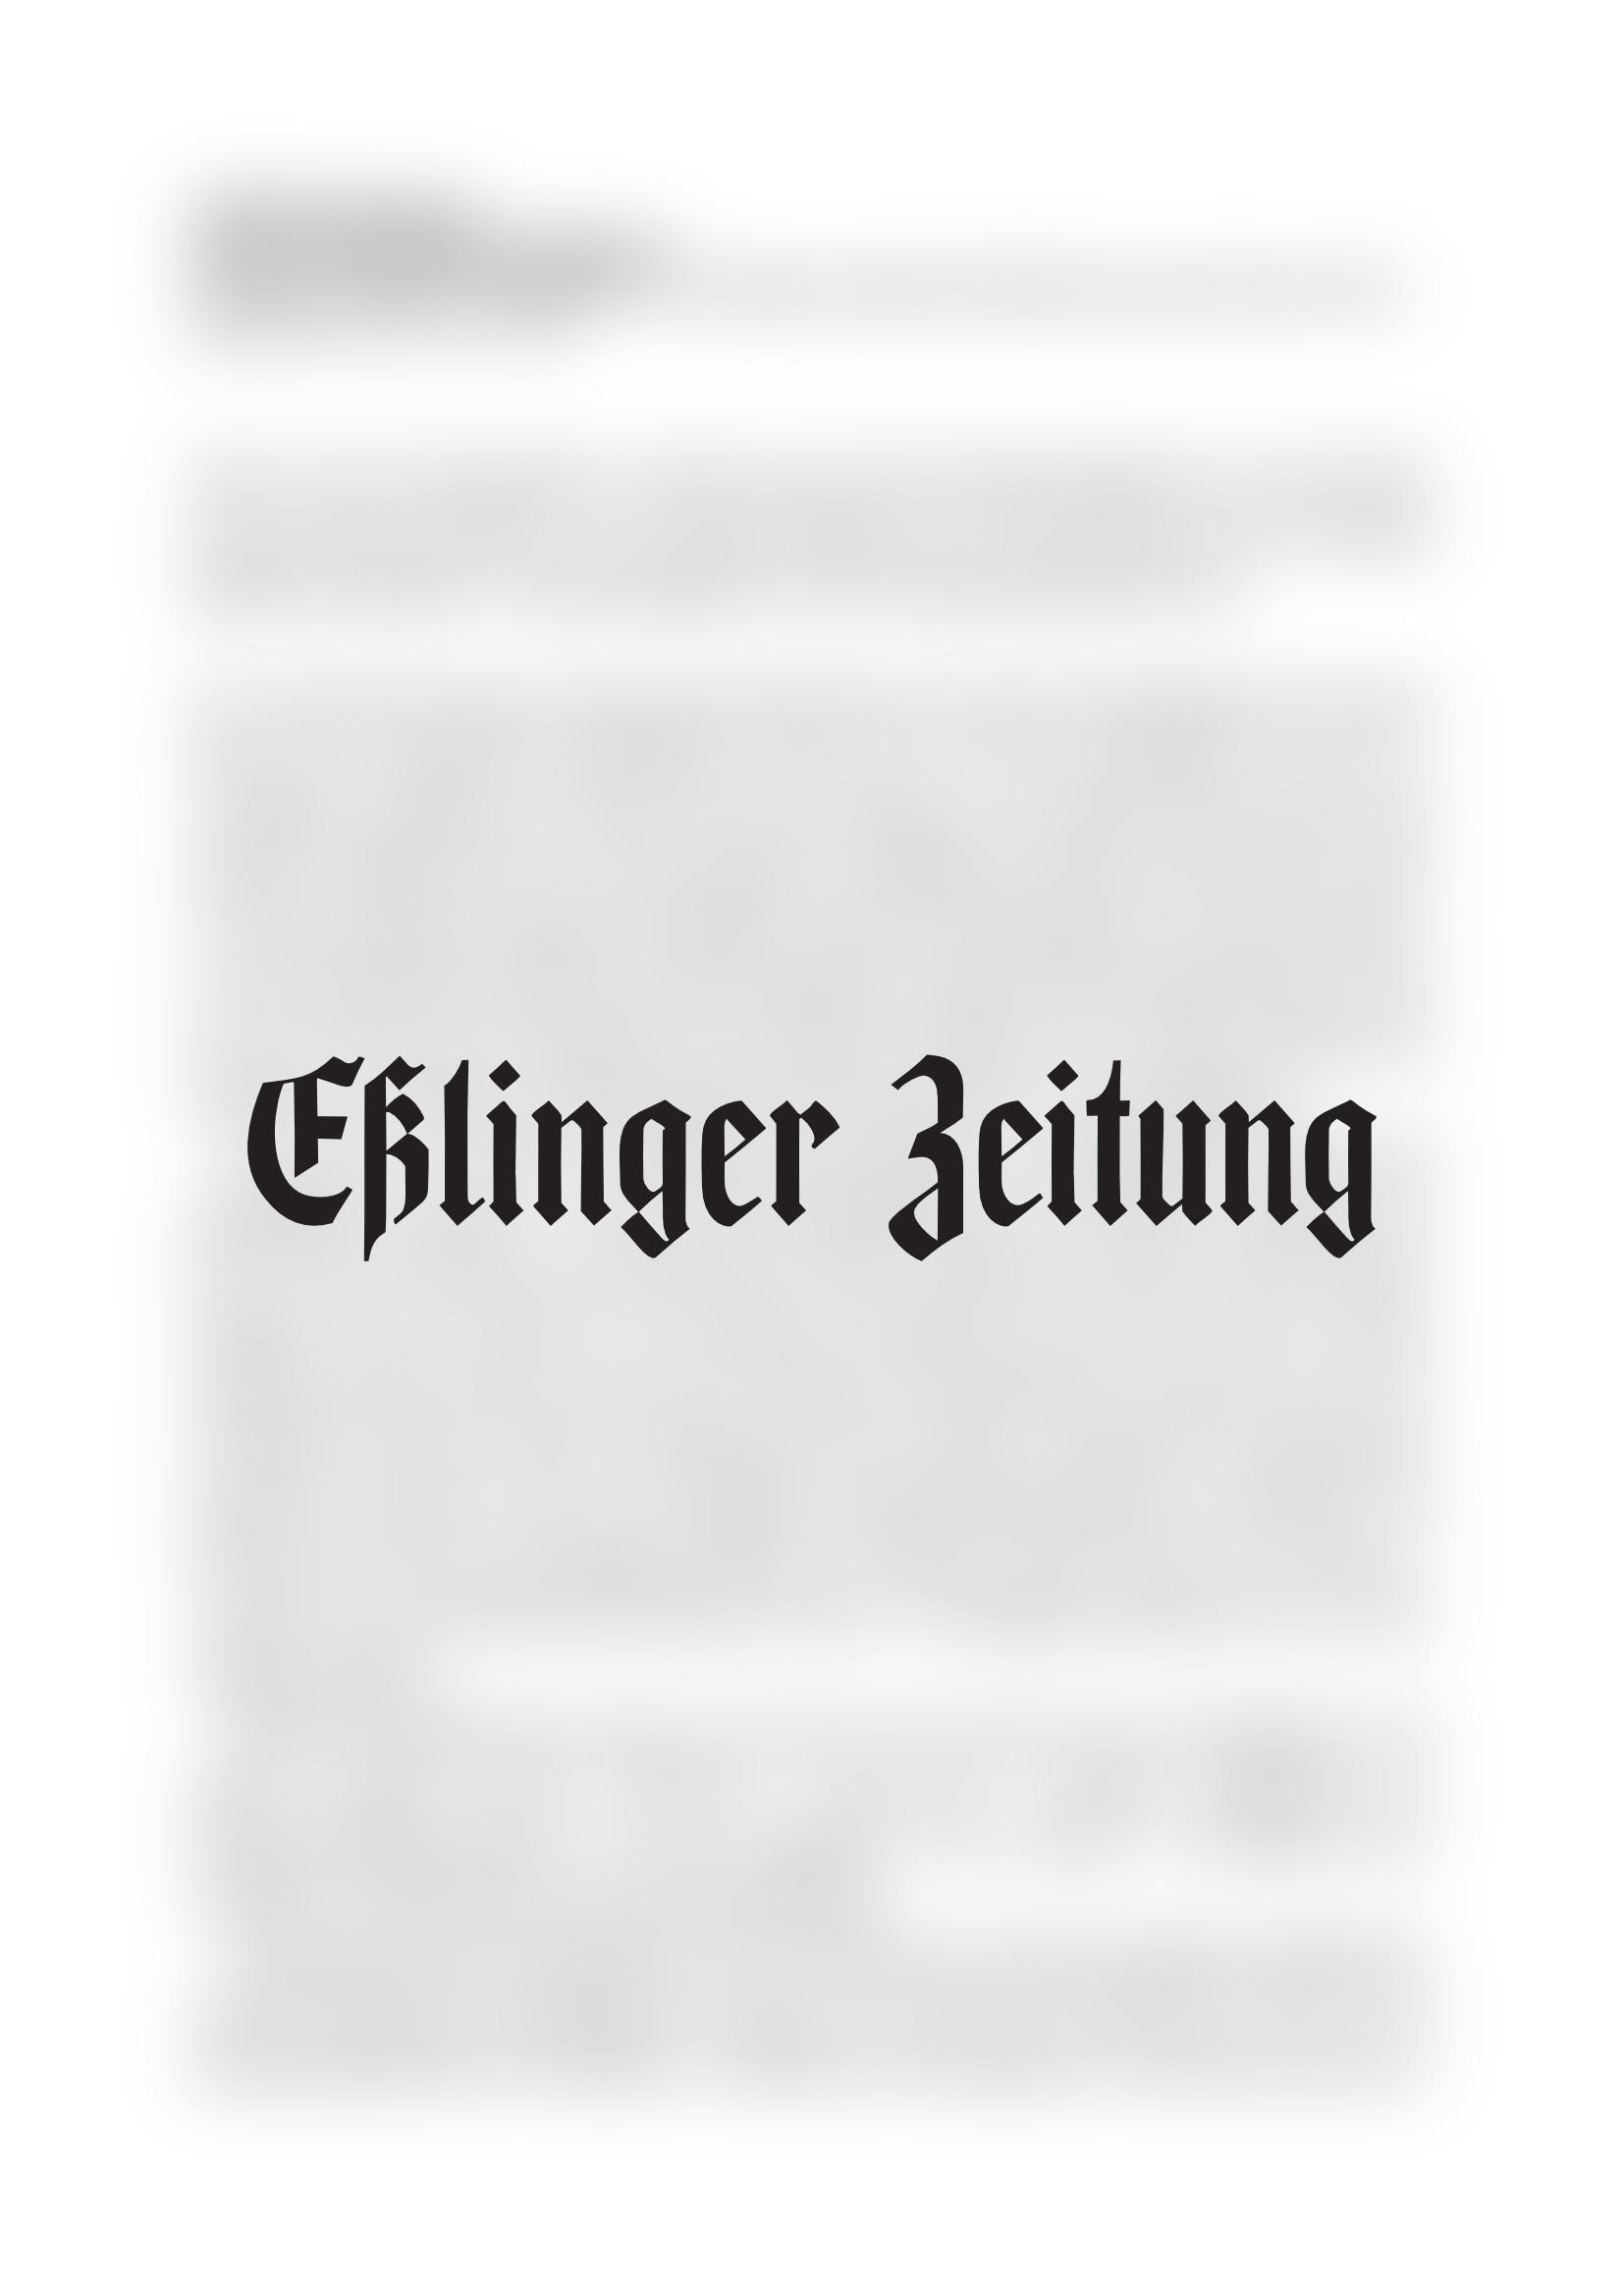 Vorschau - Esslinger Zeitung